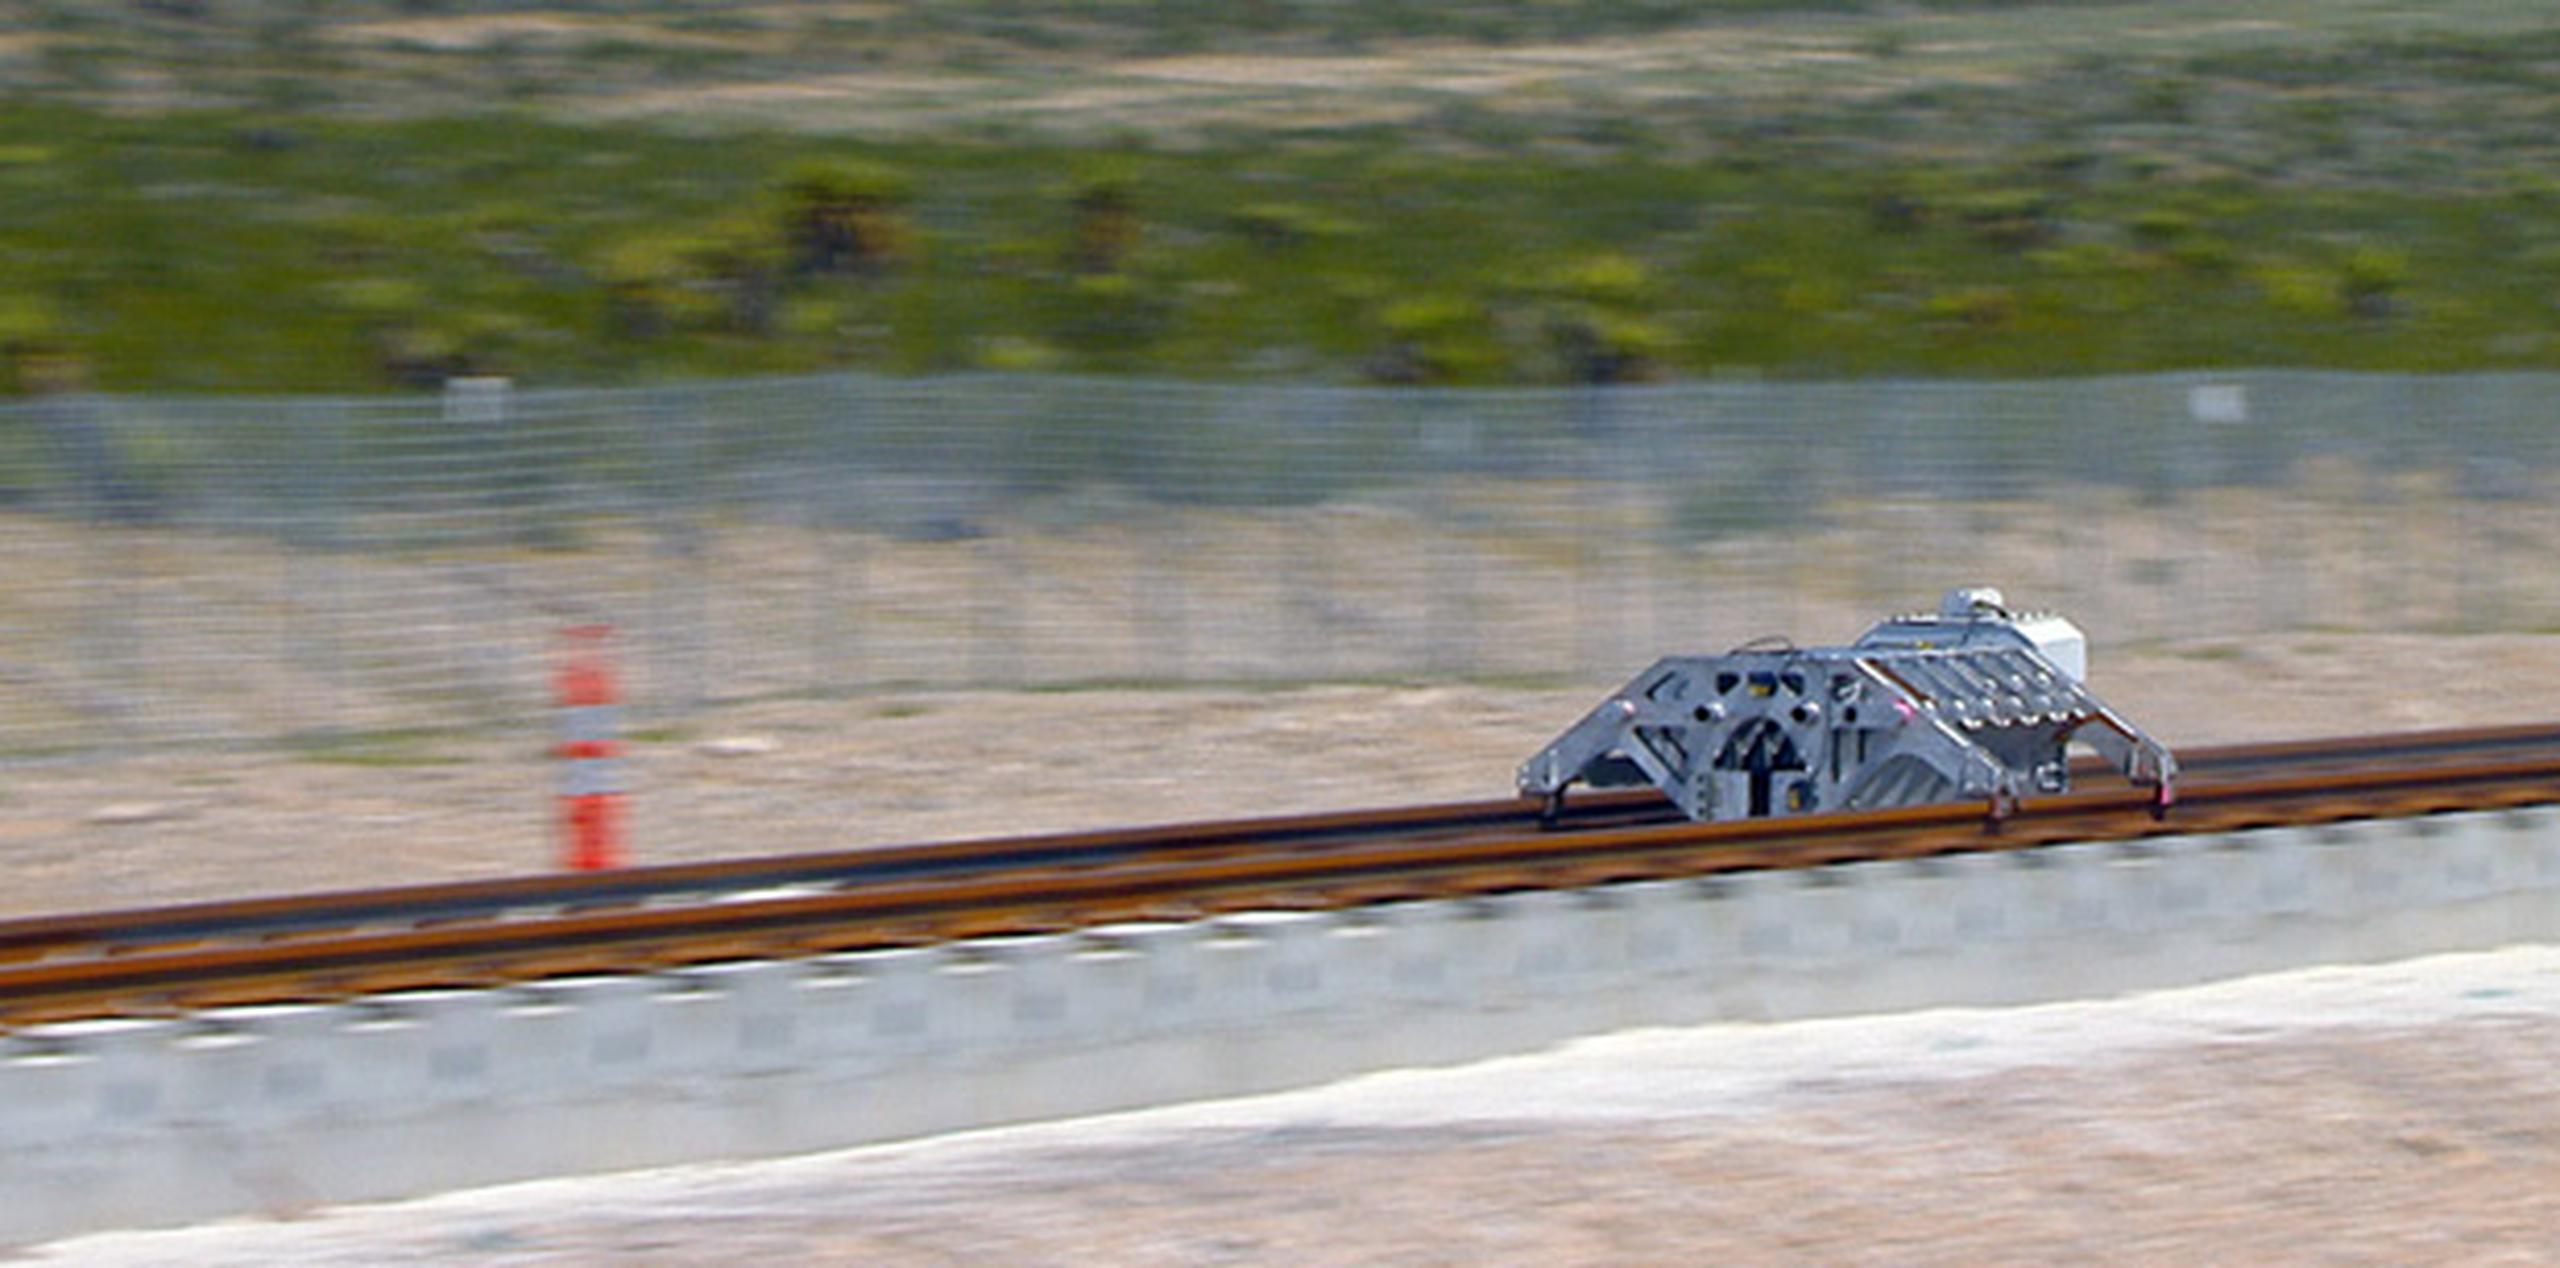 Fotografía distribuida por Hyperloop One que muestra la primera prueba del sistema de transporte supersónico conocido como "Hyperloop One" en Las Vegas. (EFE)